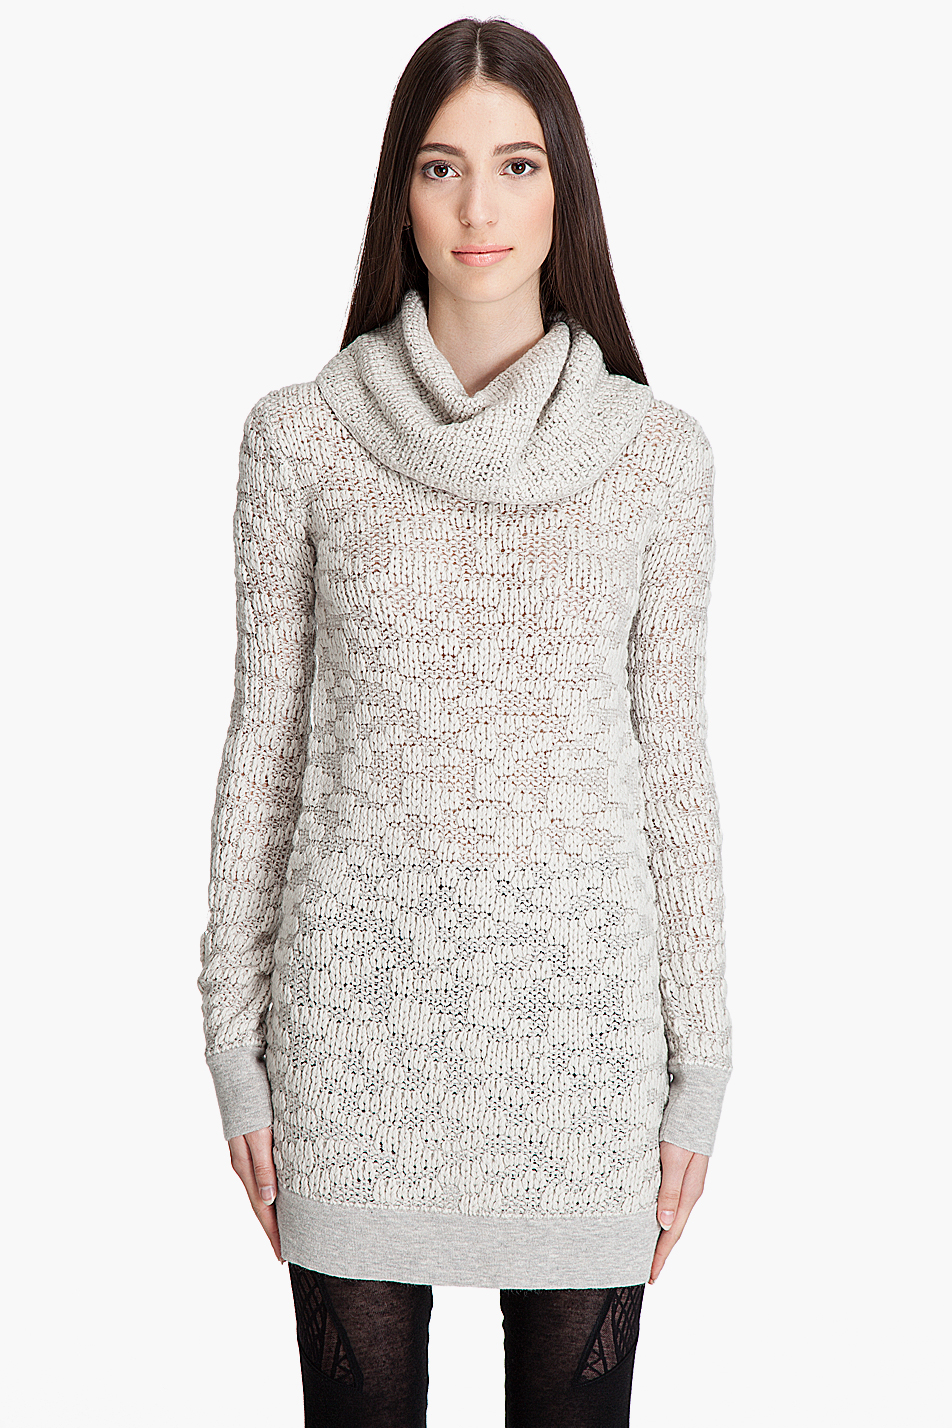 Helmut Lang Merino Wool Open-weave Turtleneck Sweater in White (Putty ...